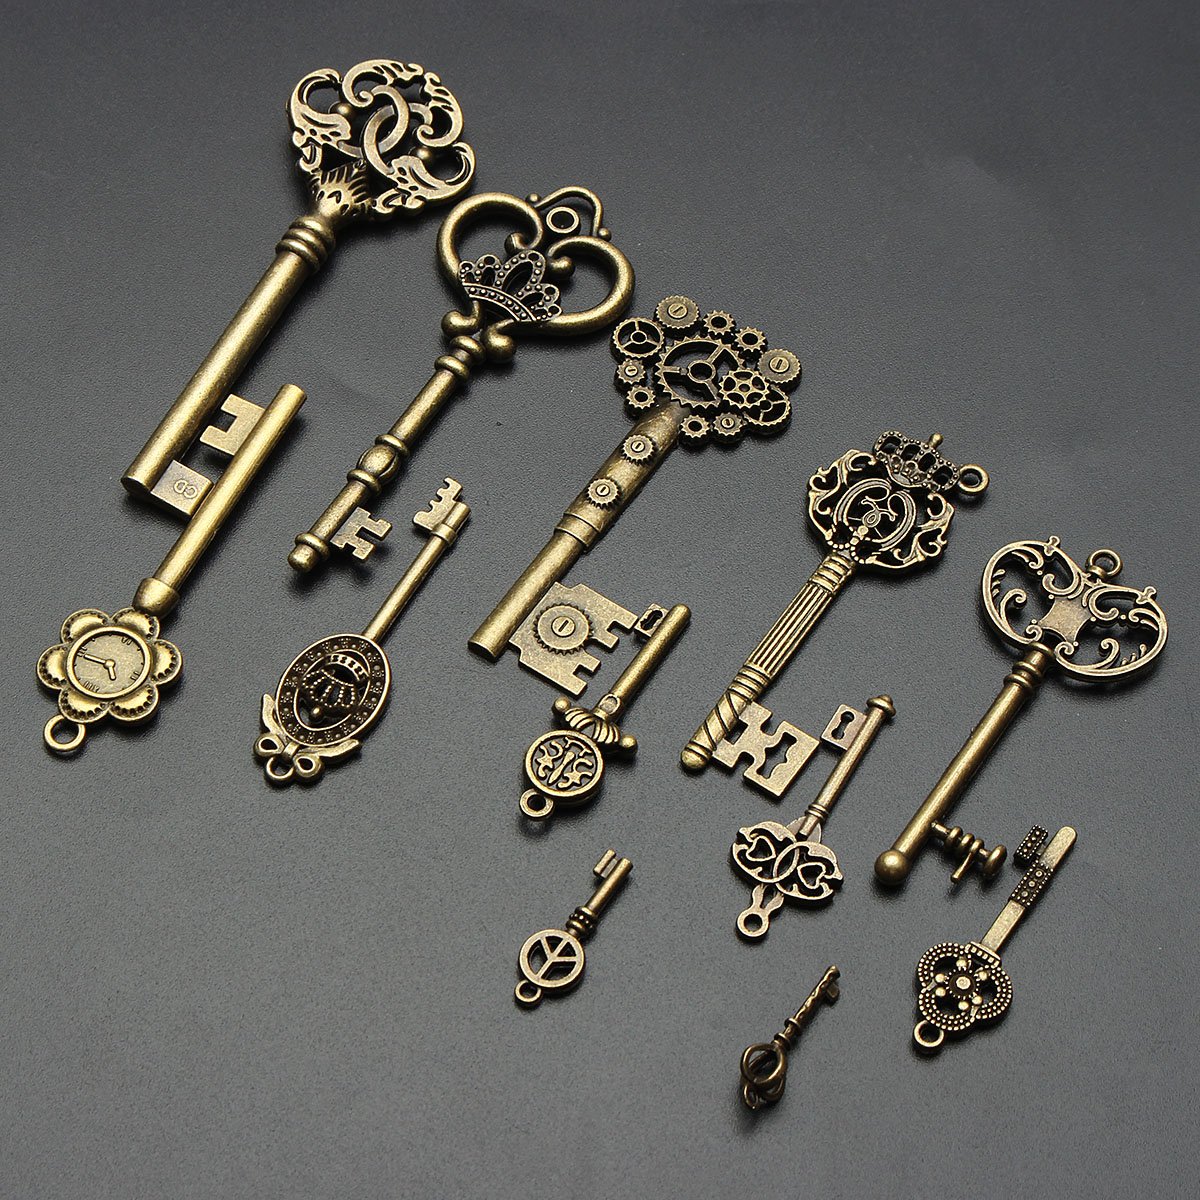 Keys picture. Старинный ключ. Декор "ключи". Ключи декоративные красивые. Красивый старинный ключ.